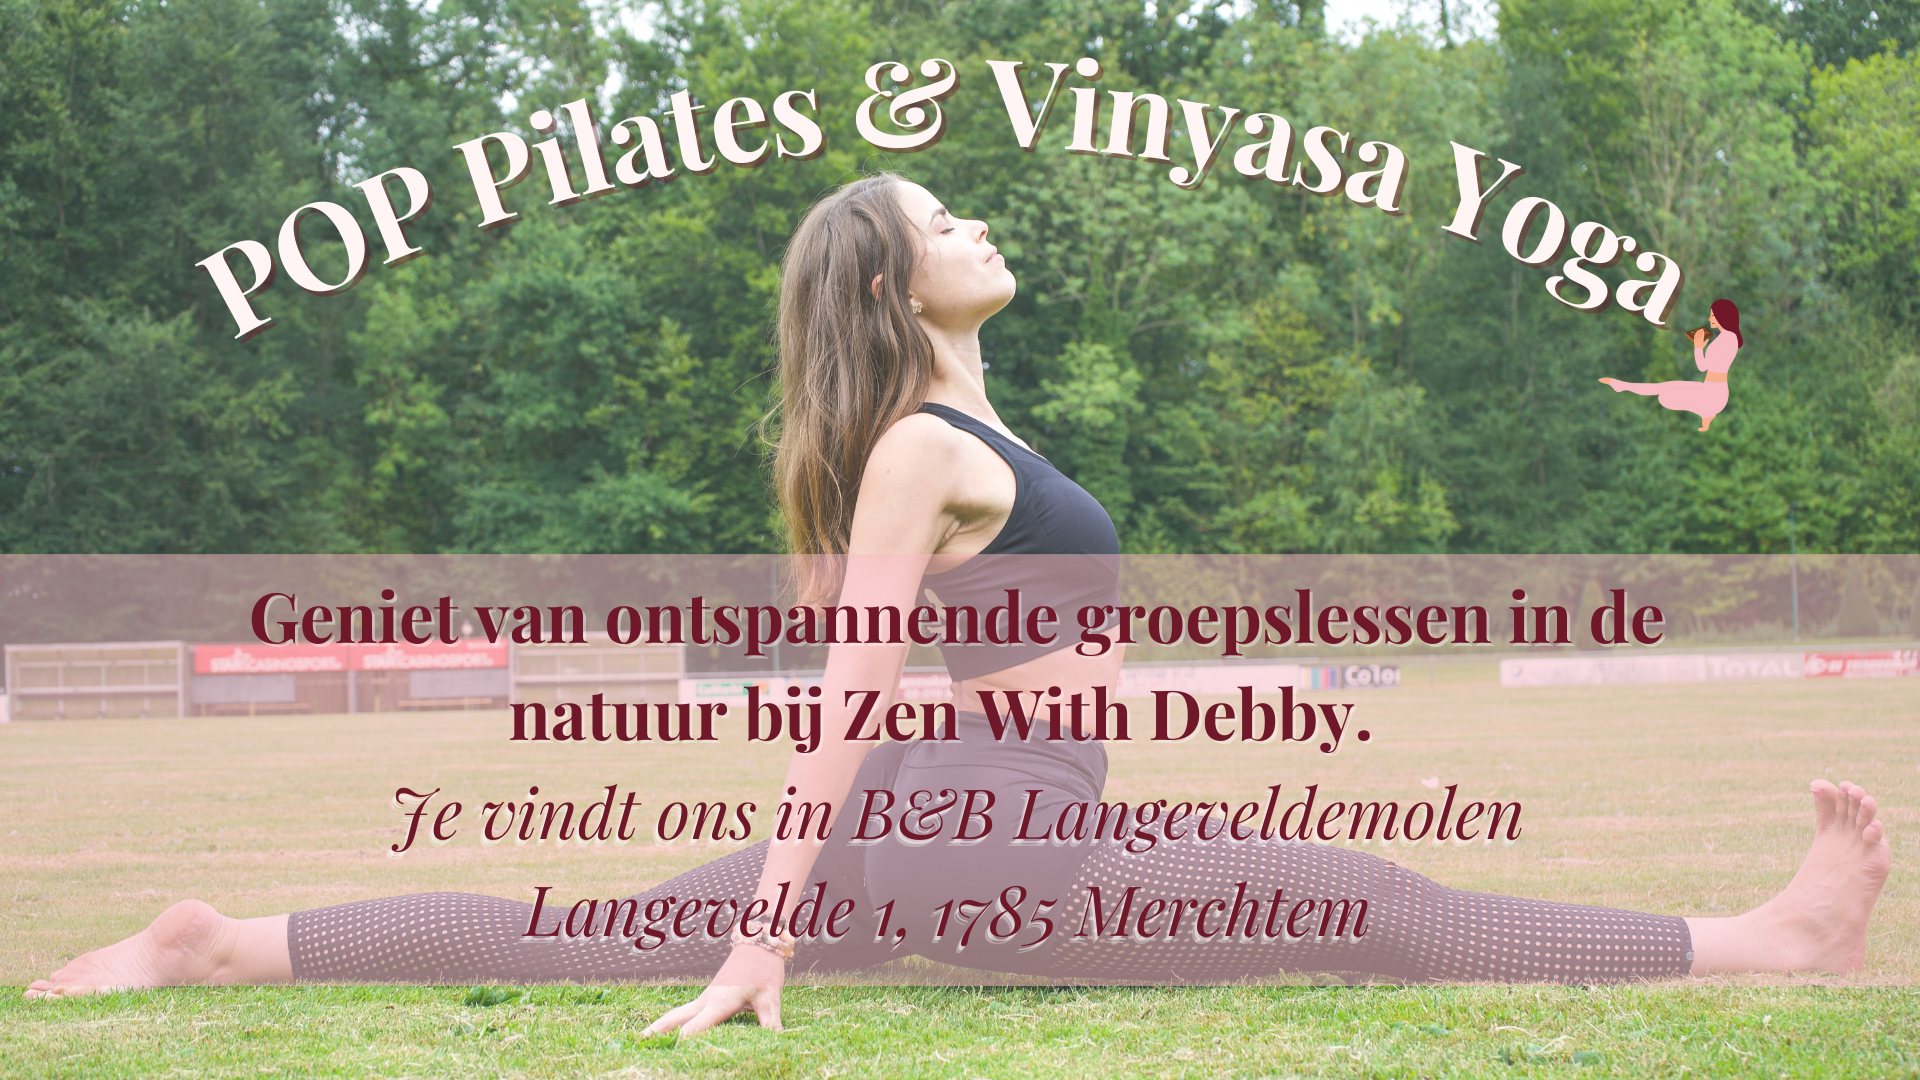 Yoga en POP Pilates bij Langeveldemolen (B&B) in Merchtem